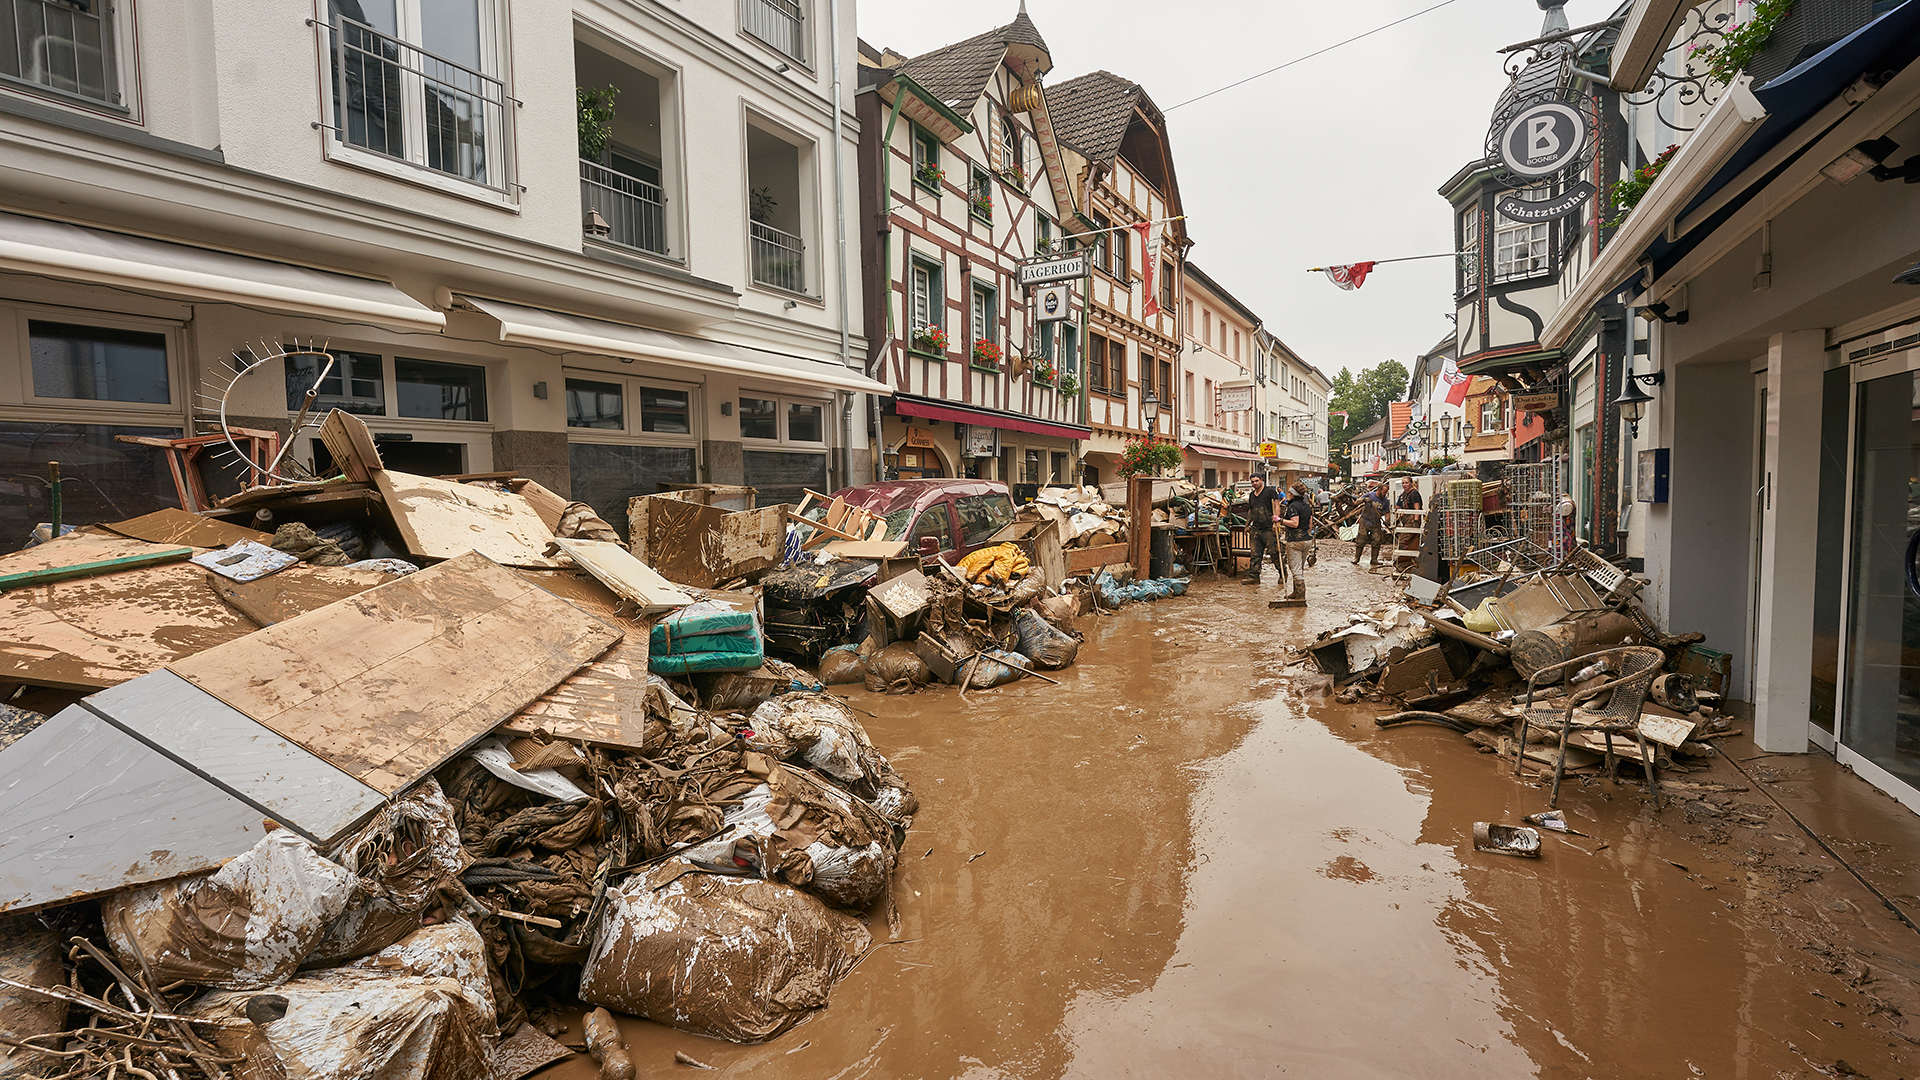 Wasser, Schutt und Sperrmüll in einer Straße in Ahrweiler in Rheinland-Pfalz | dpa